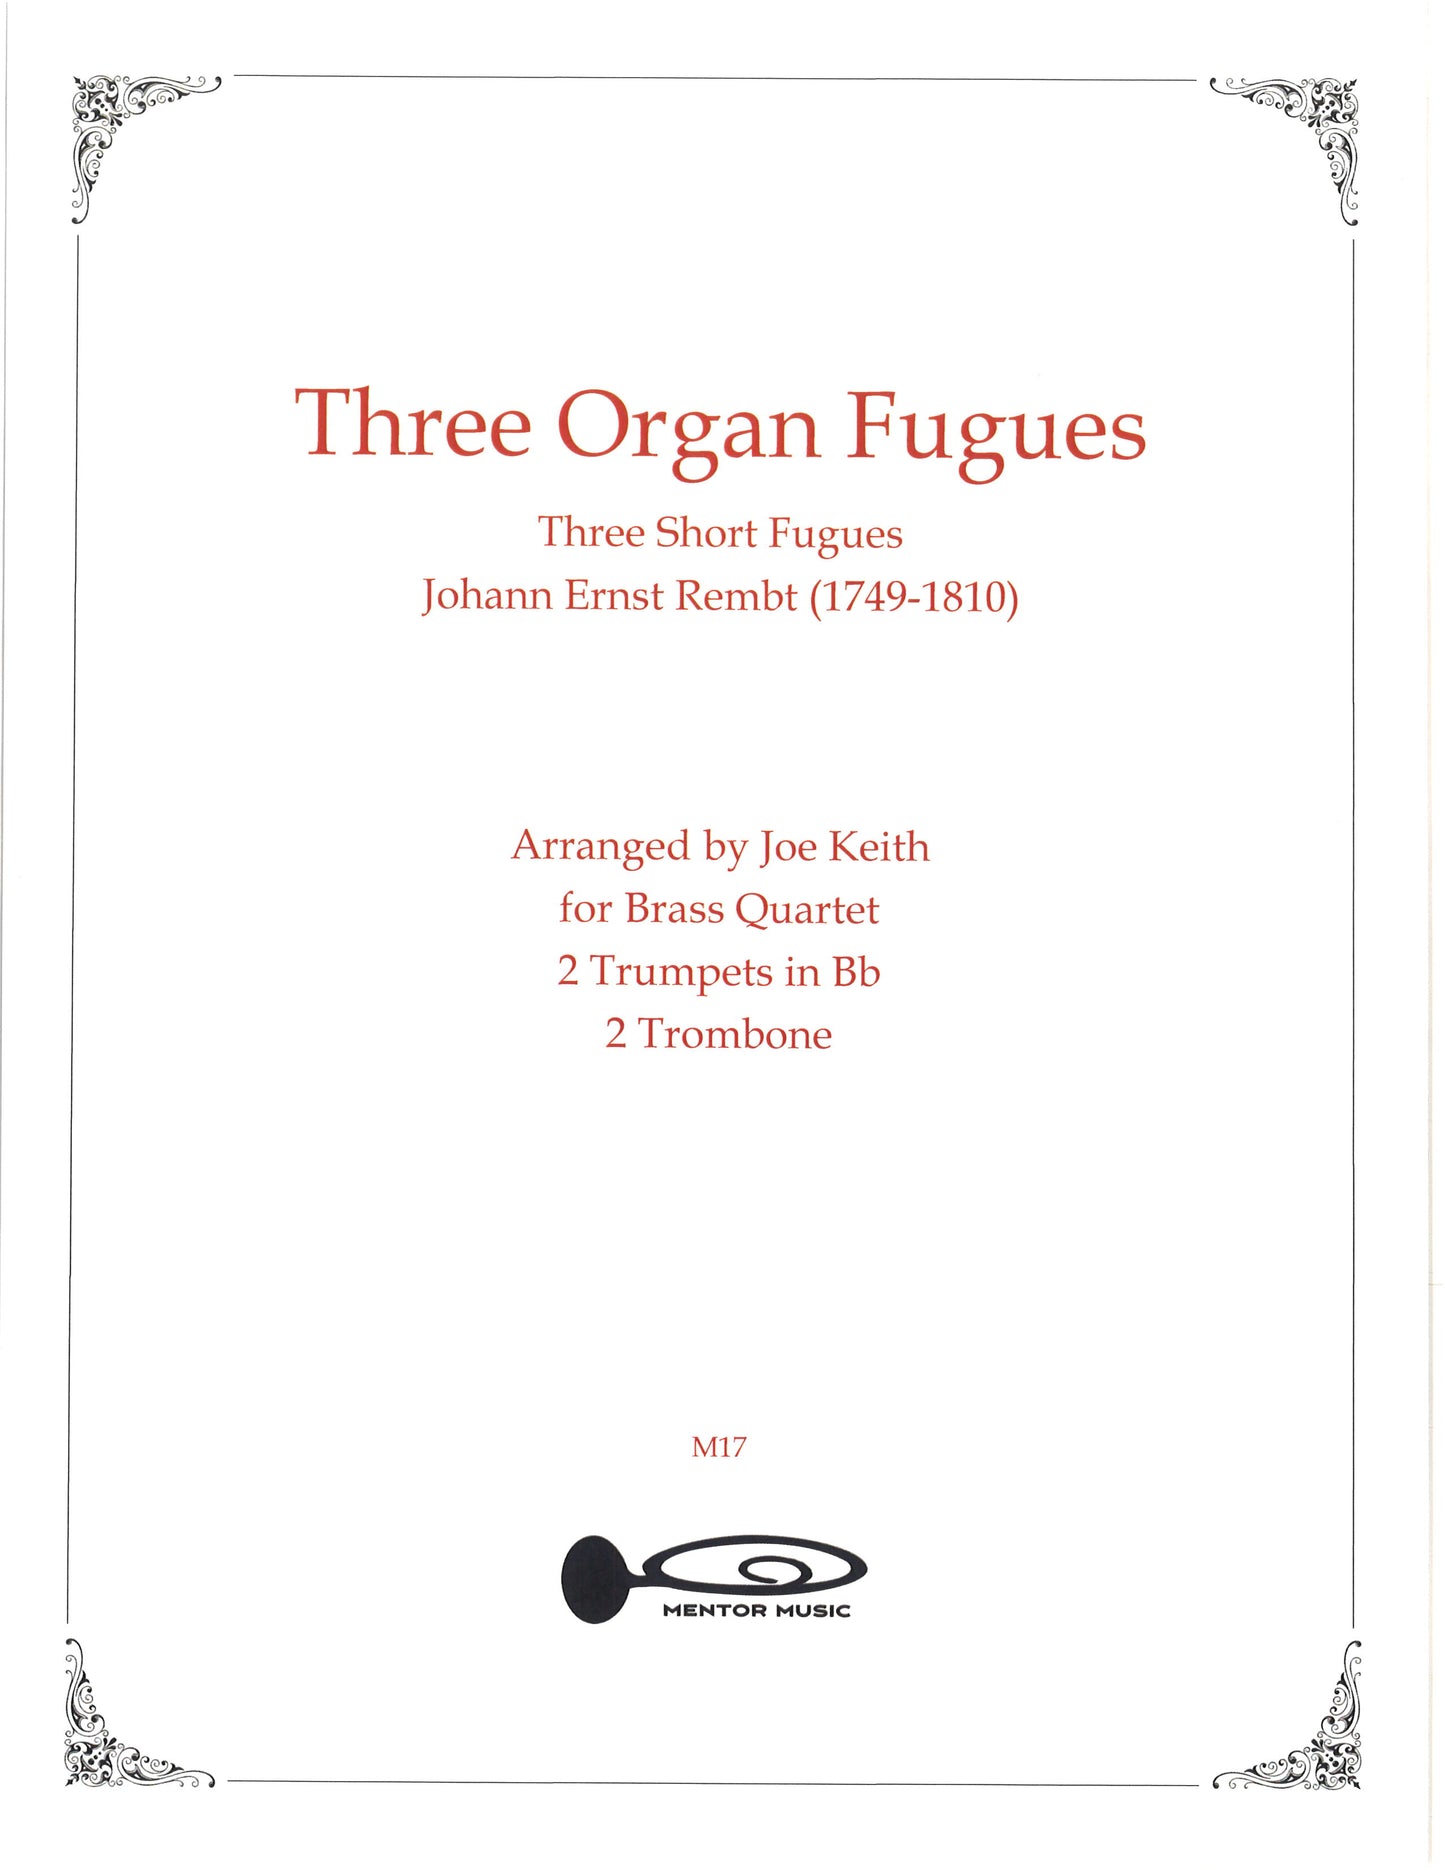 Three Organ Fugues by Johann Ernst Rembt (2013)